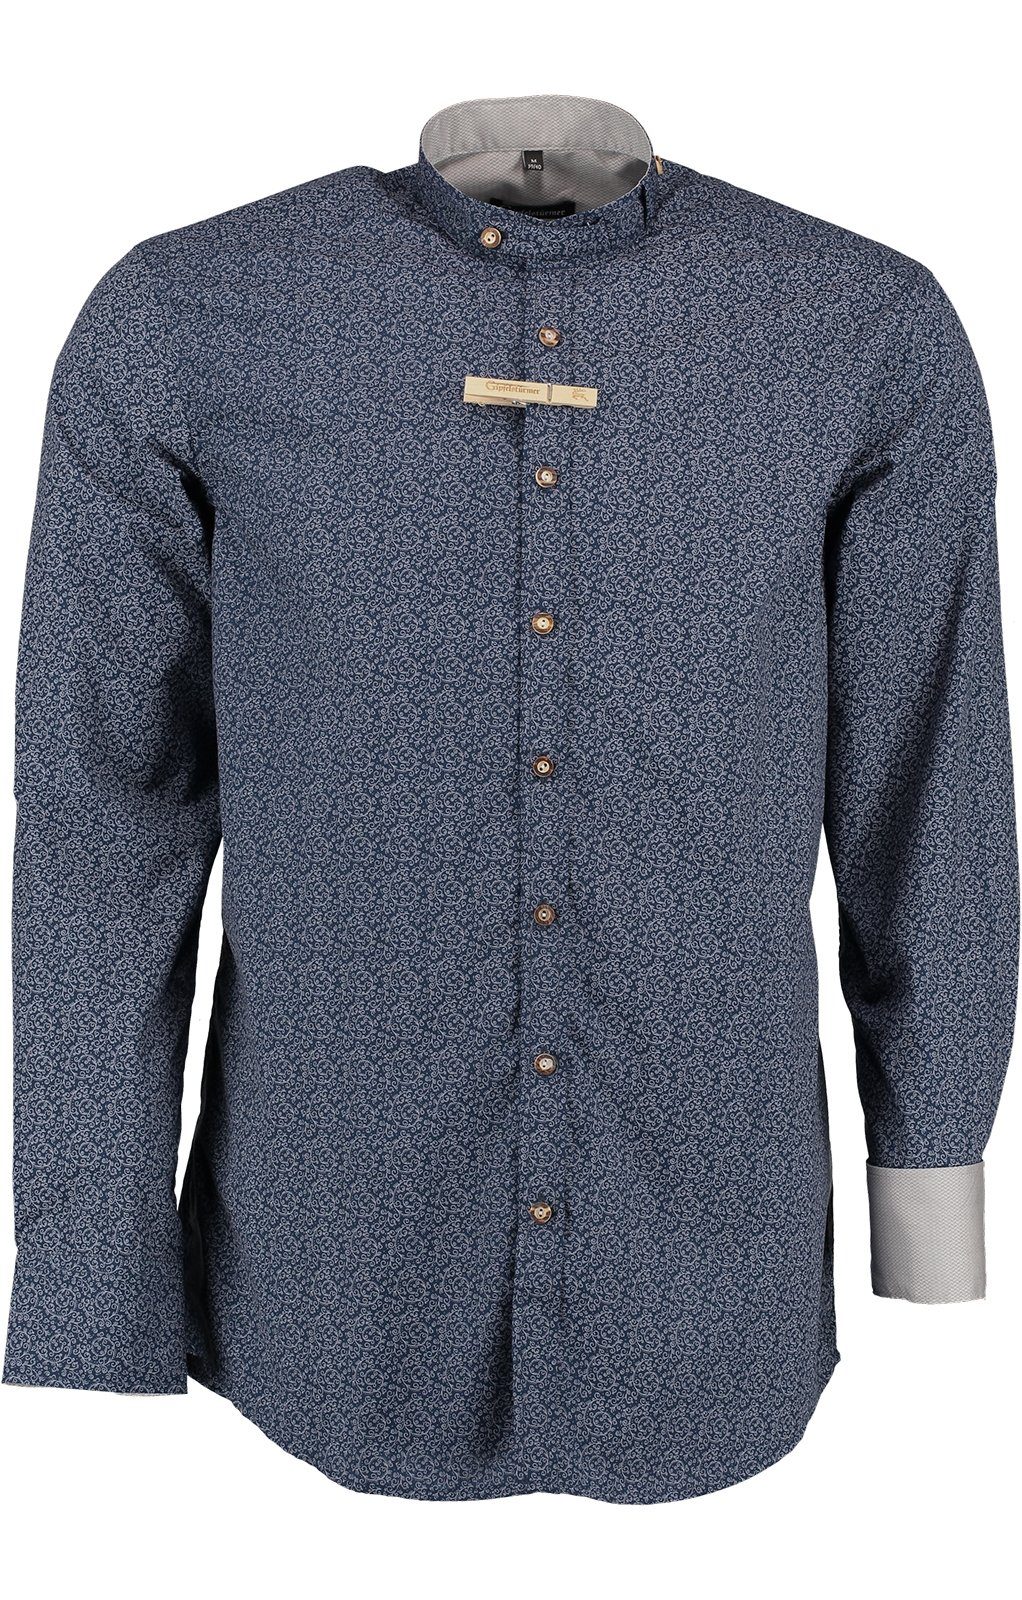 OS-Trachten Trachtenhemd Stehkragenhemd ERIK blau